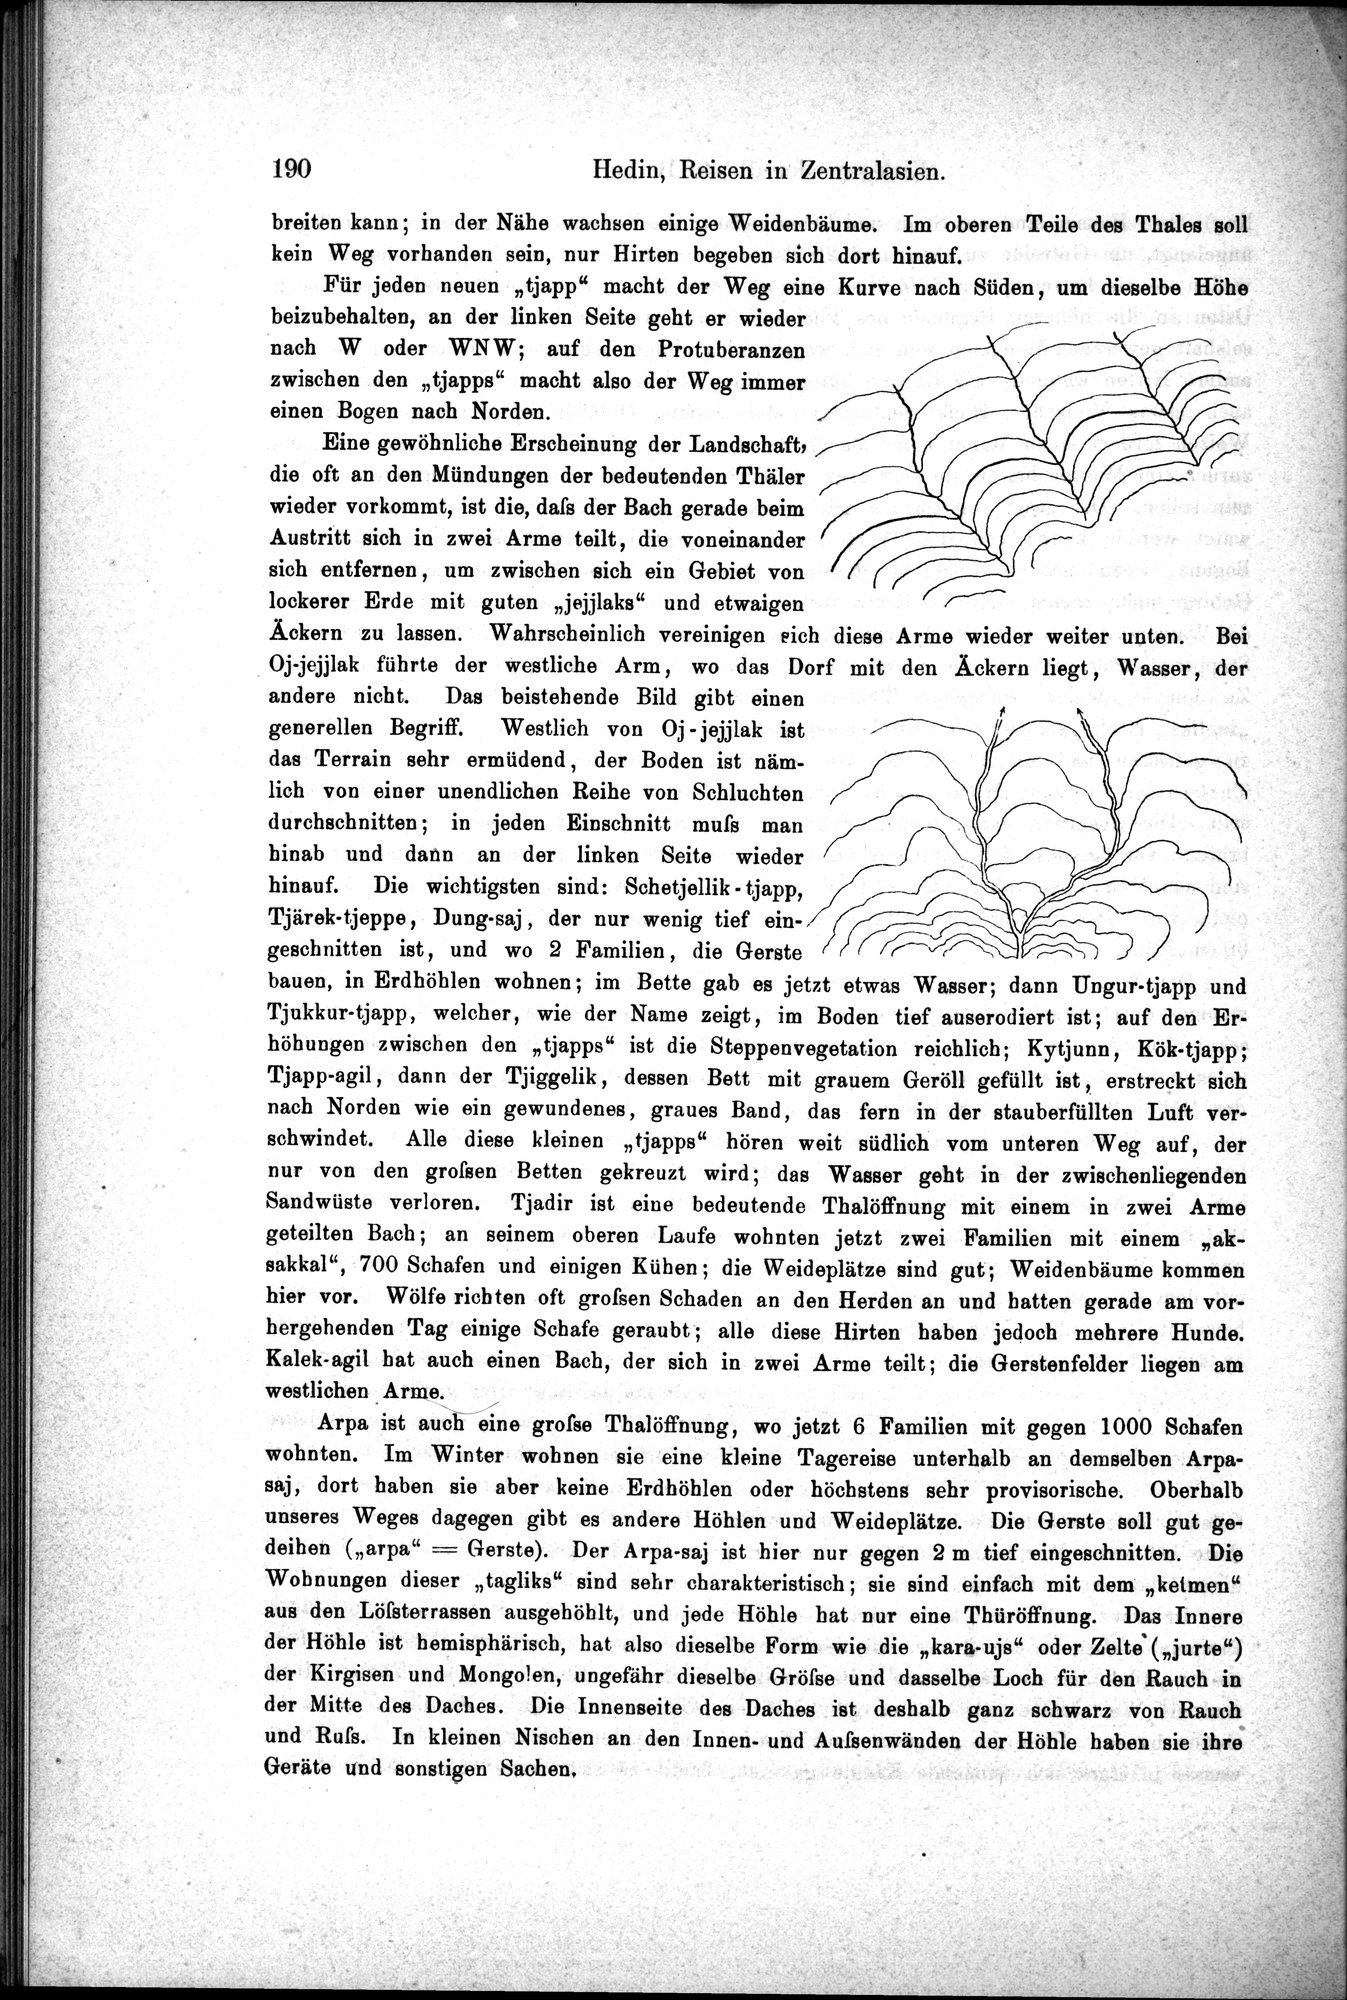 Die Geographische-Wissenschaftlichen Ergebnisse meiner Reisen in Zentralasien, 1894-1897 : vol.1 / Page 202 (Grayscale High Resolution Image)